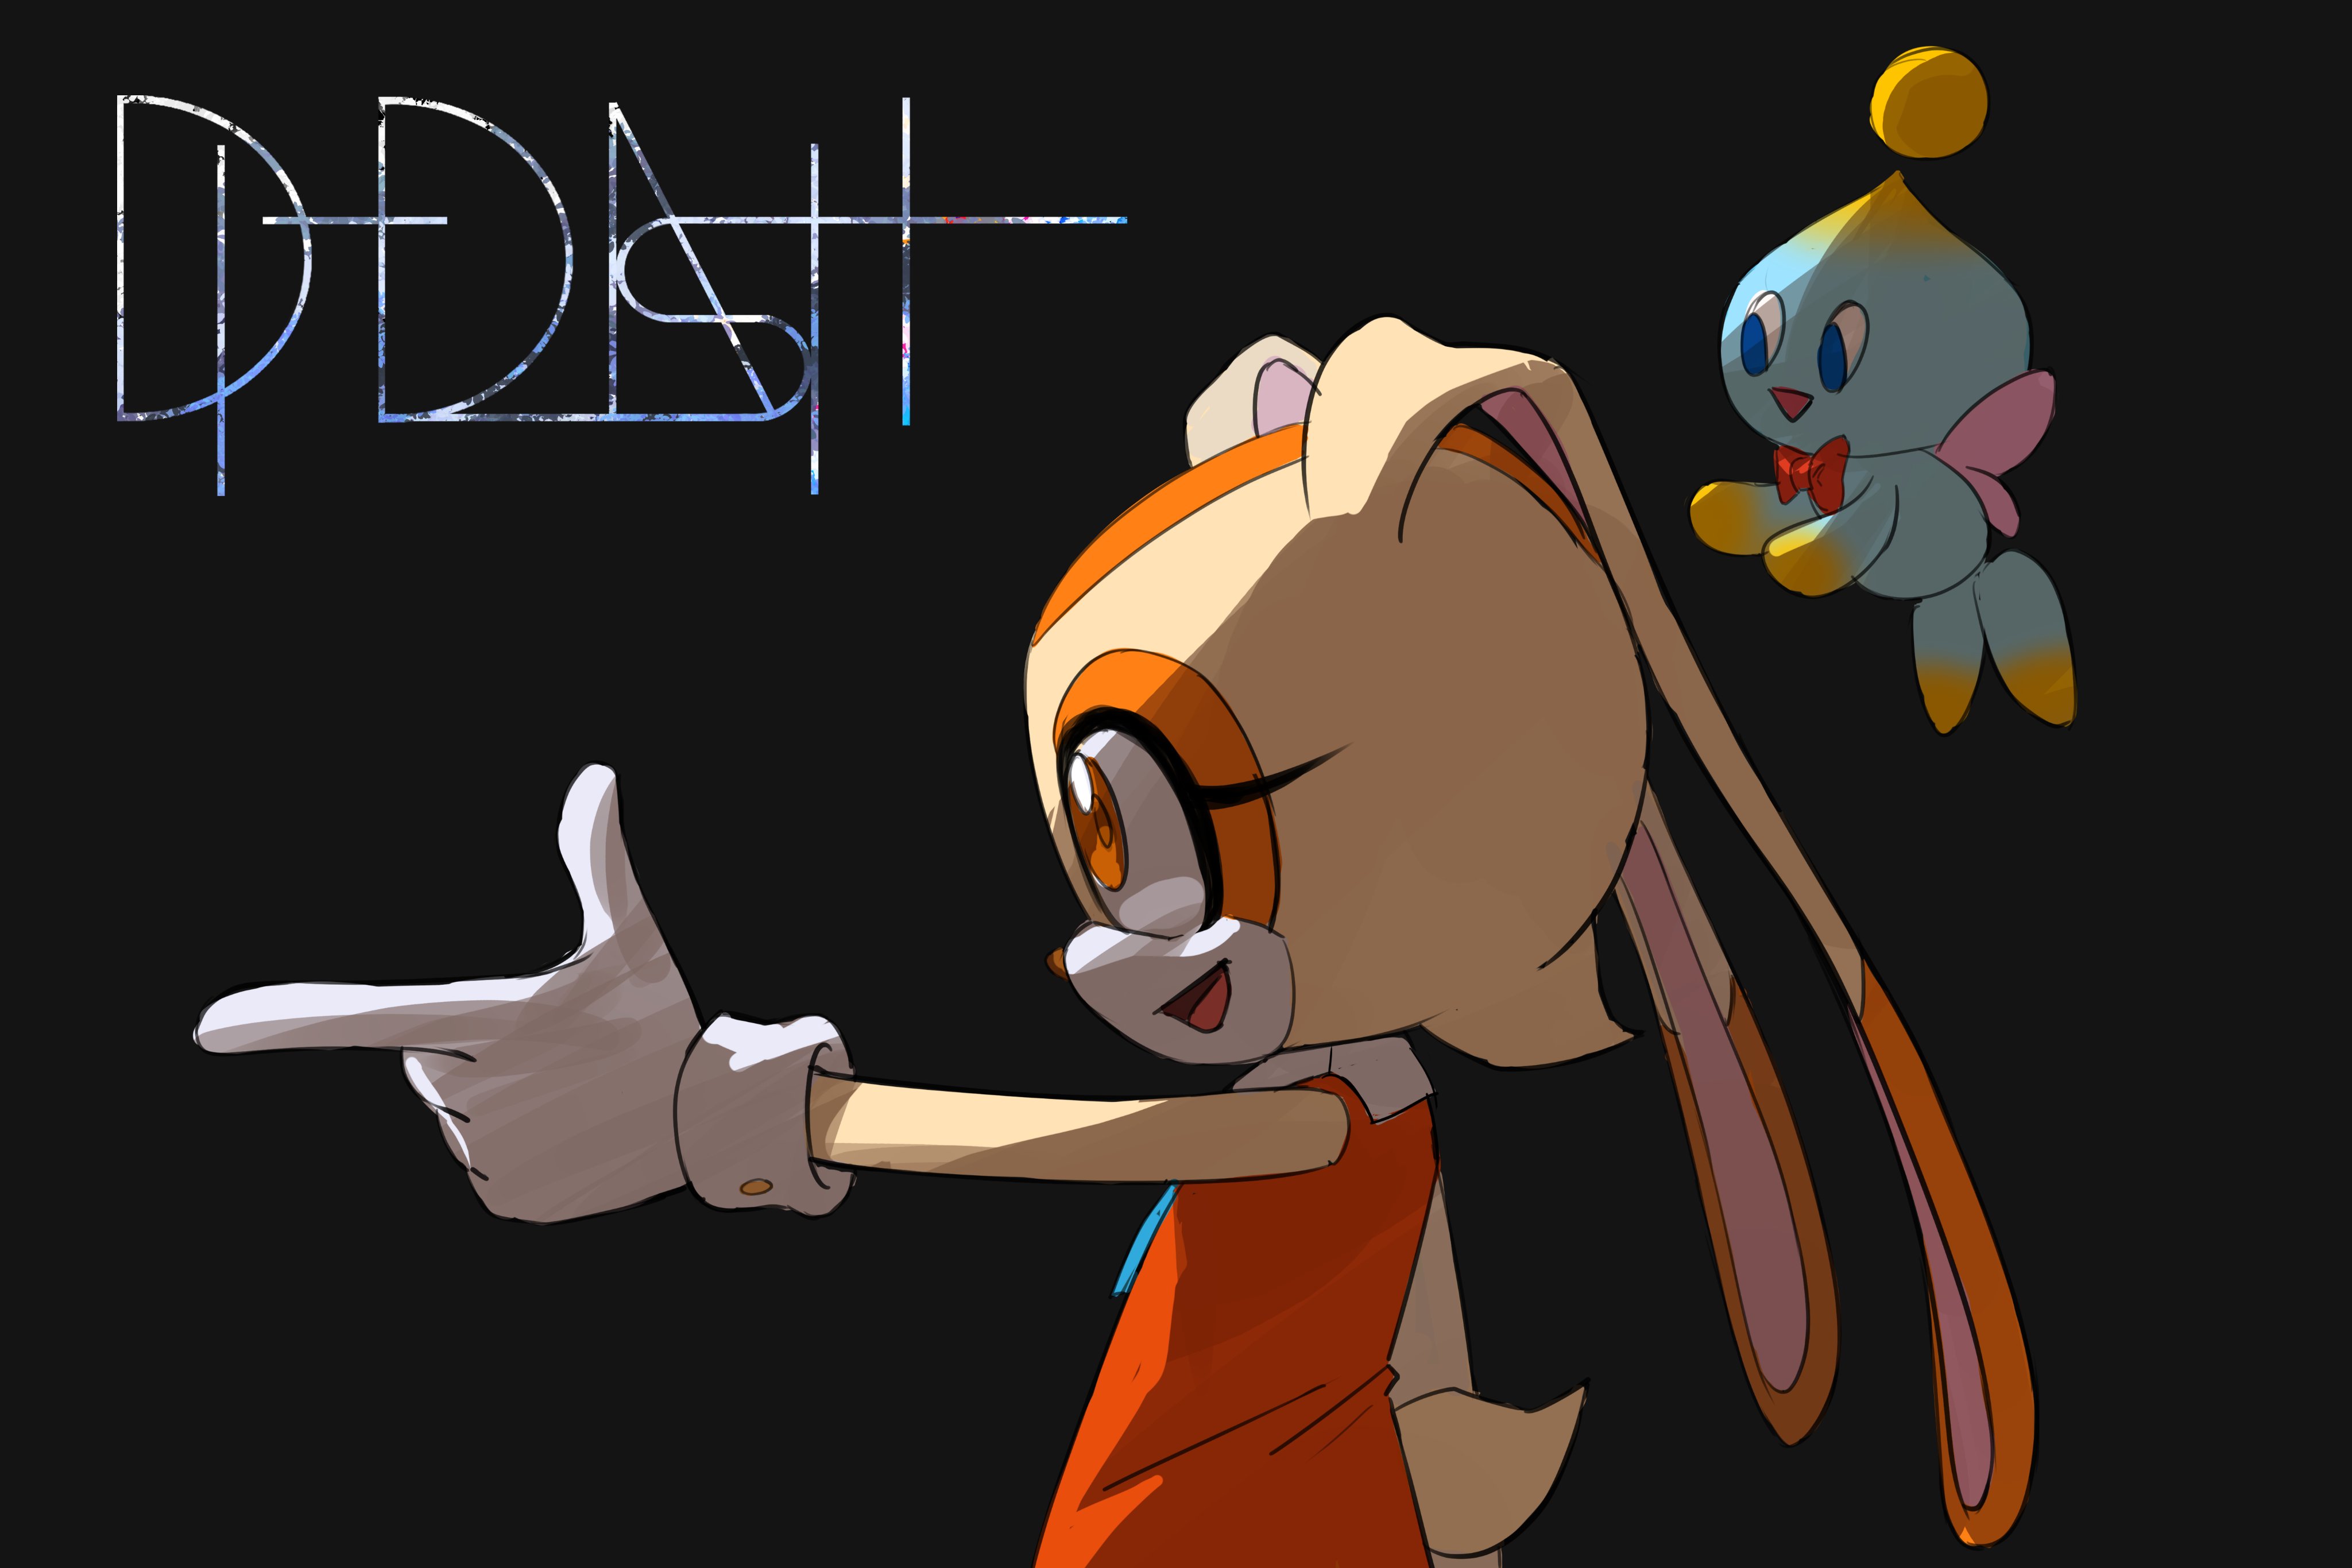 Di-Dash on X: I' herewith you #sonamy #SonicTheHedgehog